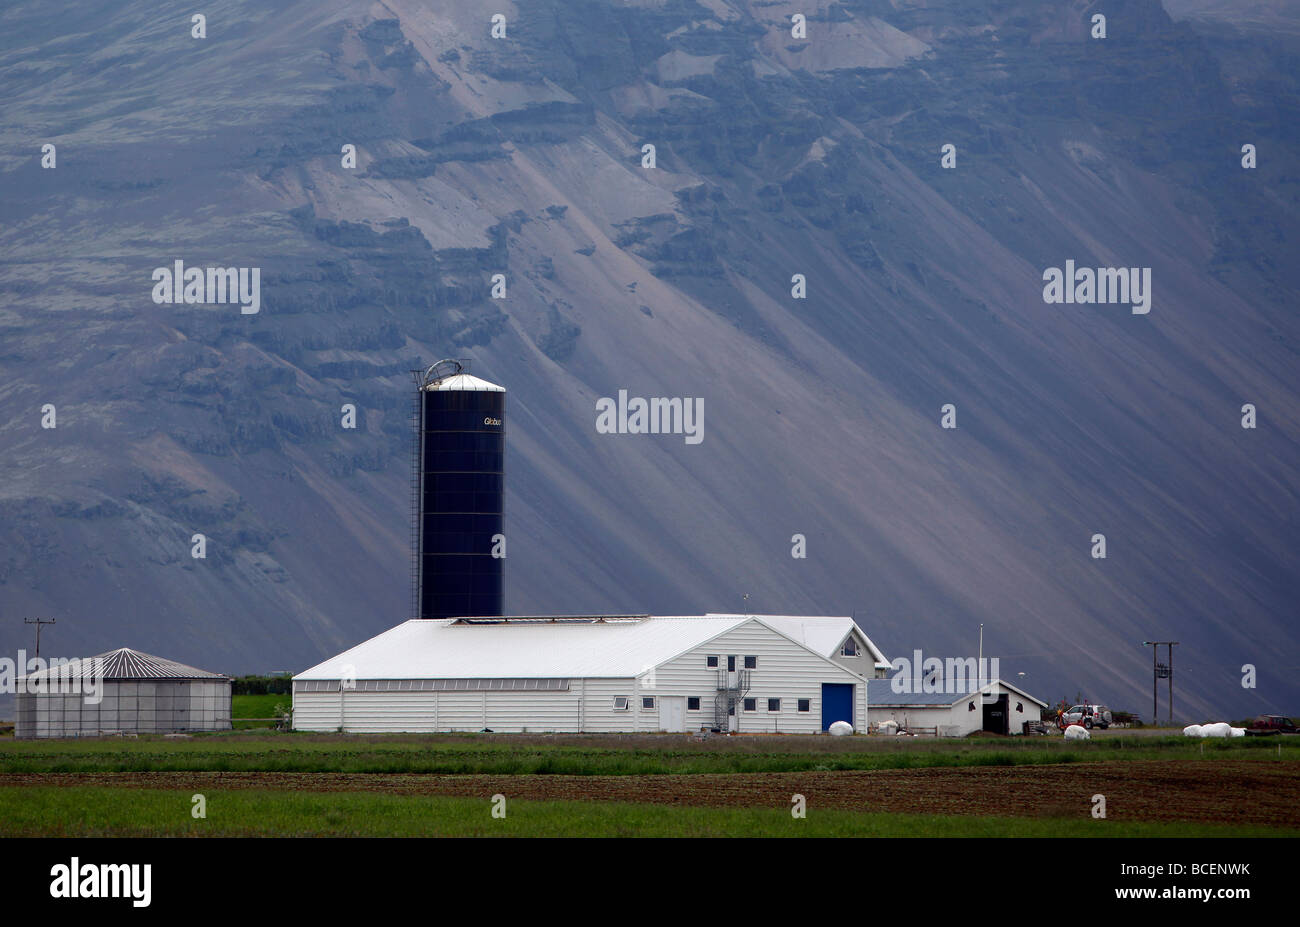 Farm and silo, near Höfn, southeast Iceland. Stock Photo